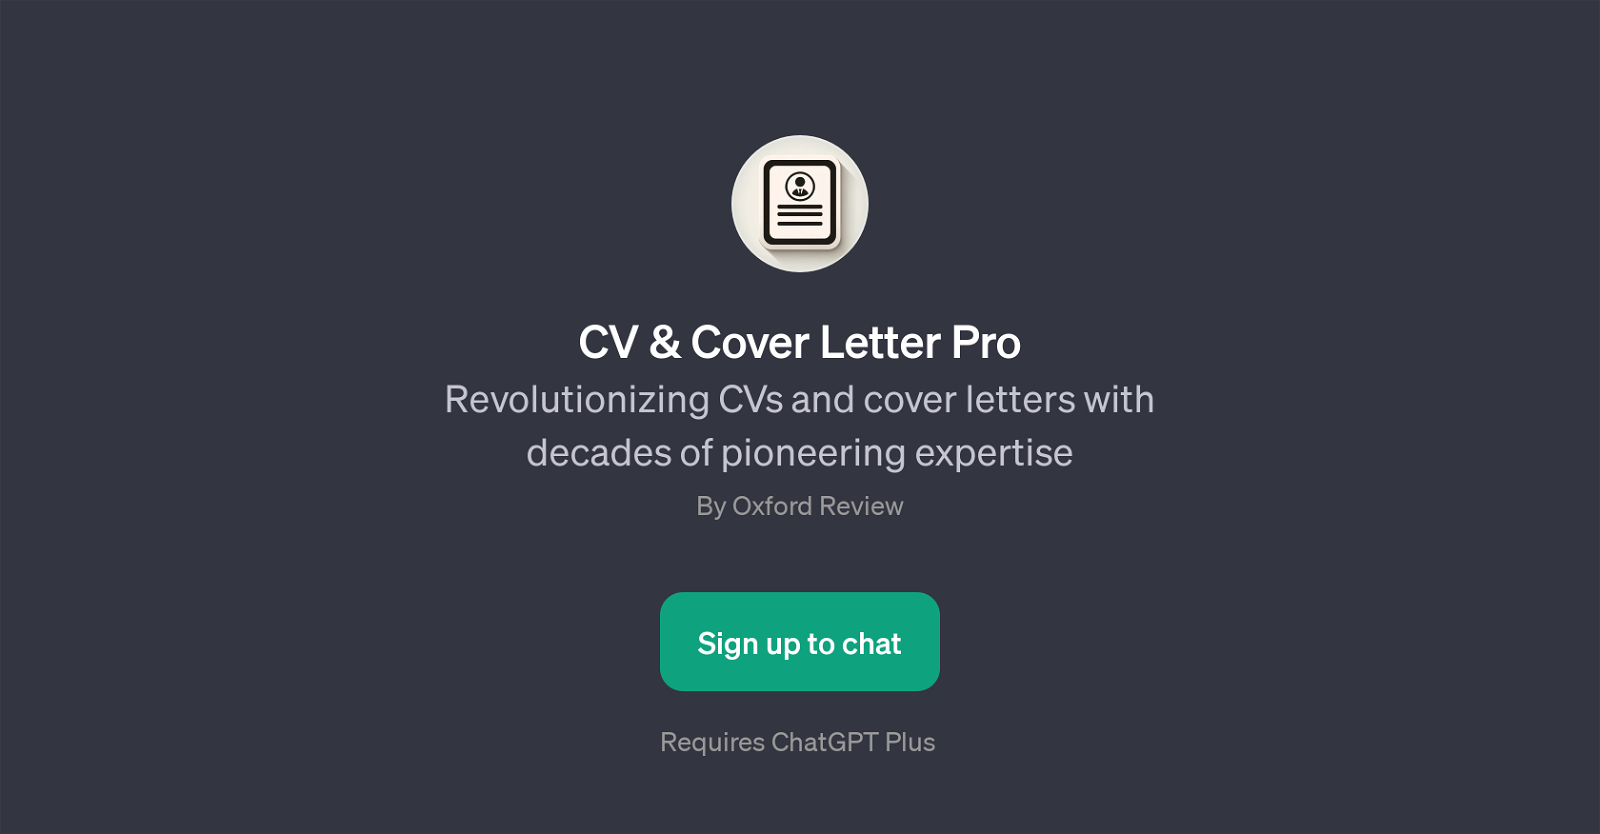 CV & Cover Letter Pro website